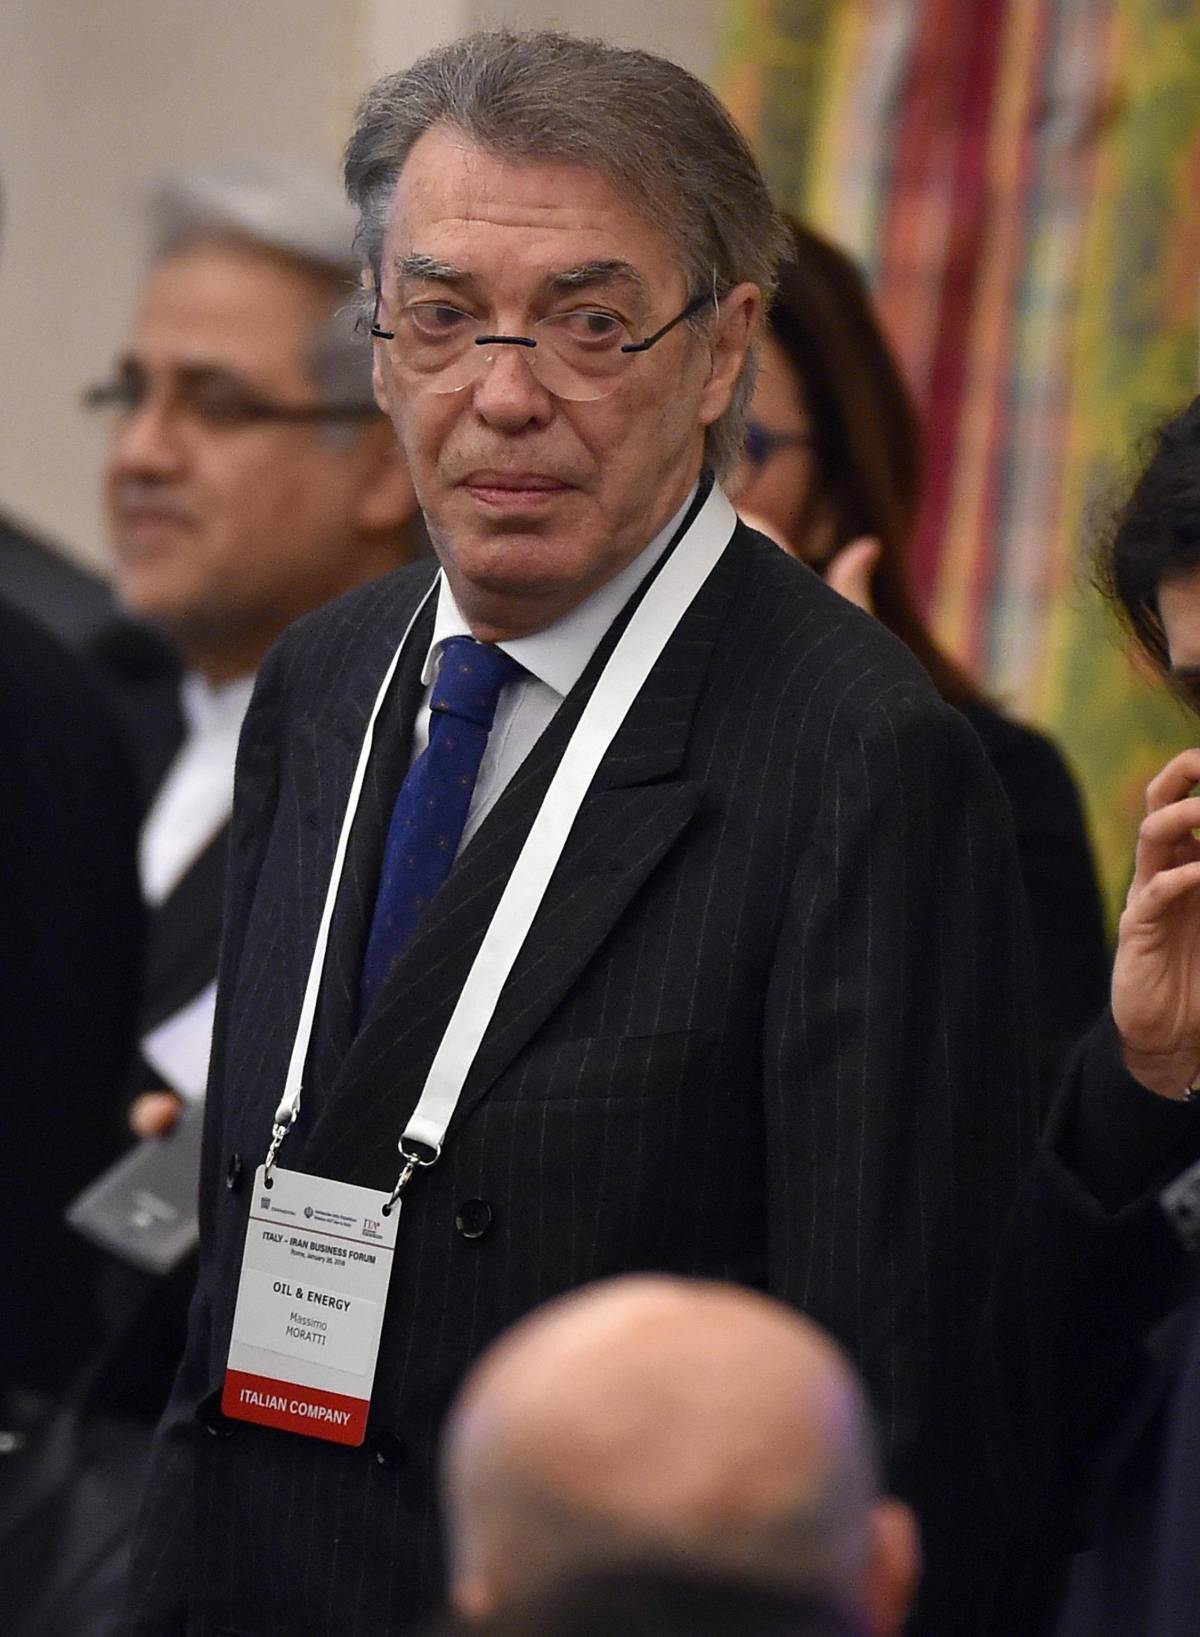 Intervento di angioplastica per Moratti: l'ex presidente dell'Inter domani già a casa 